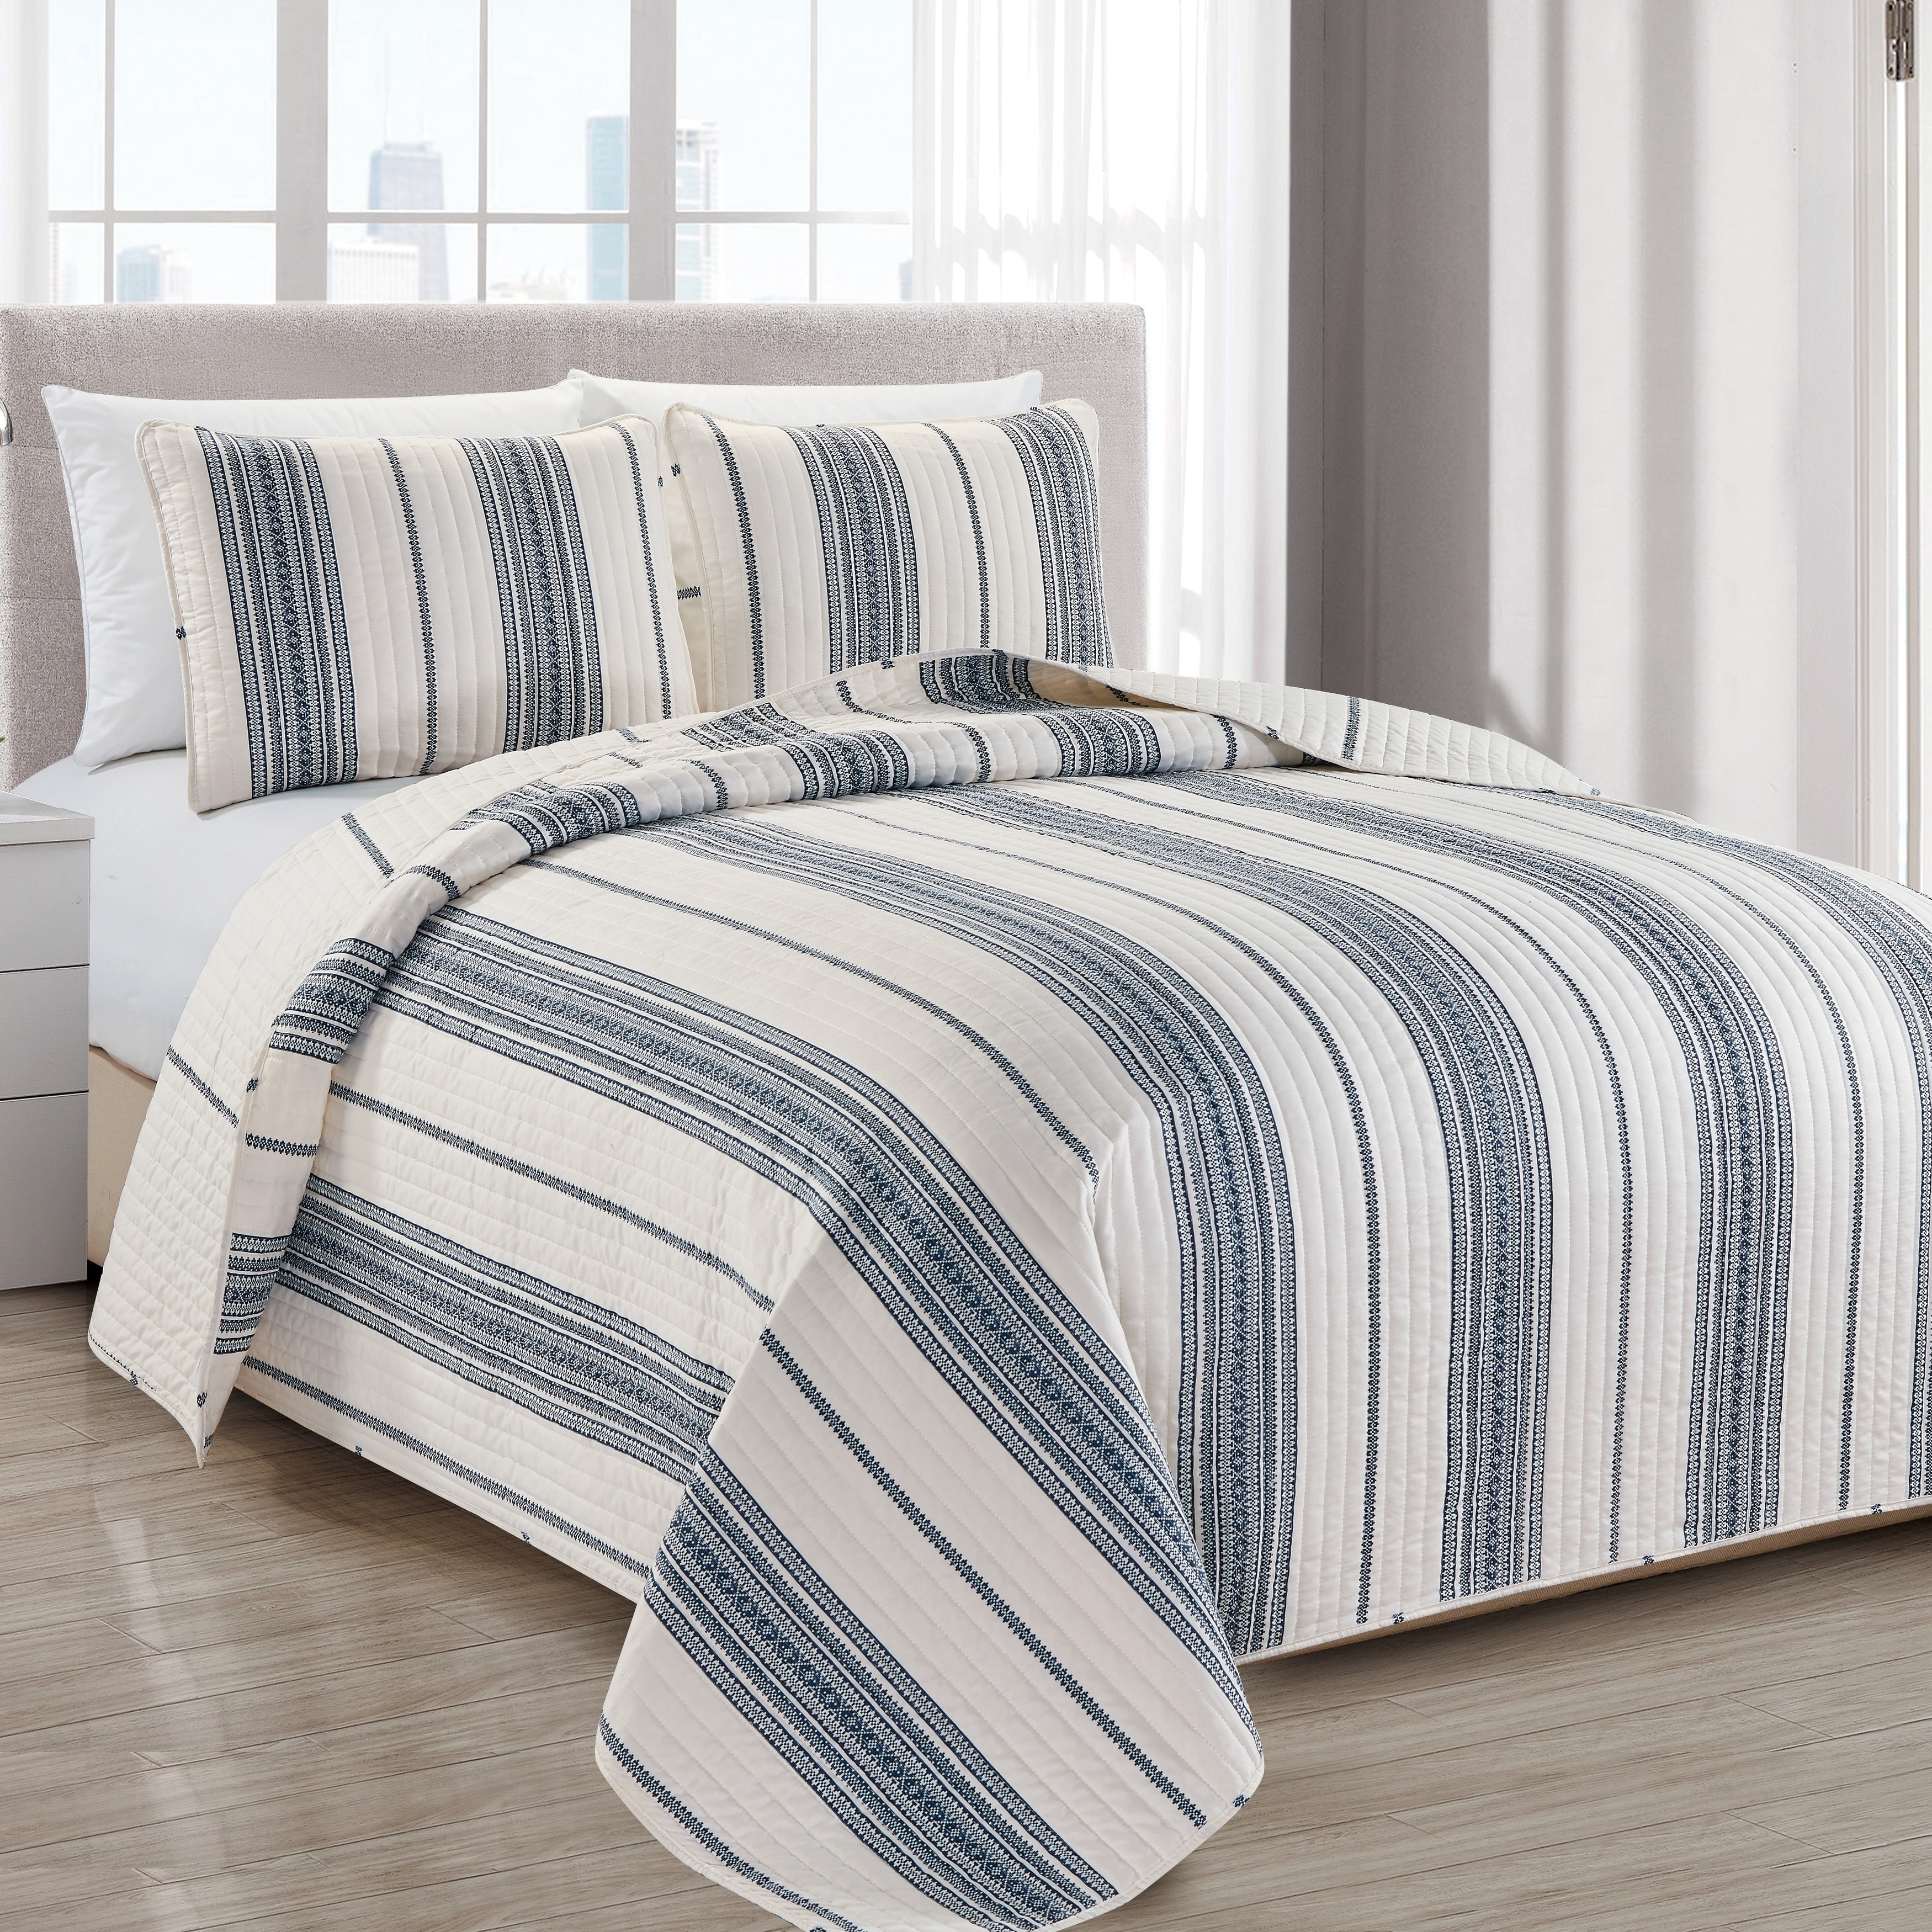 3-Piece Reversible Striped Quilt Set 